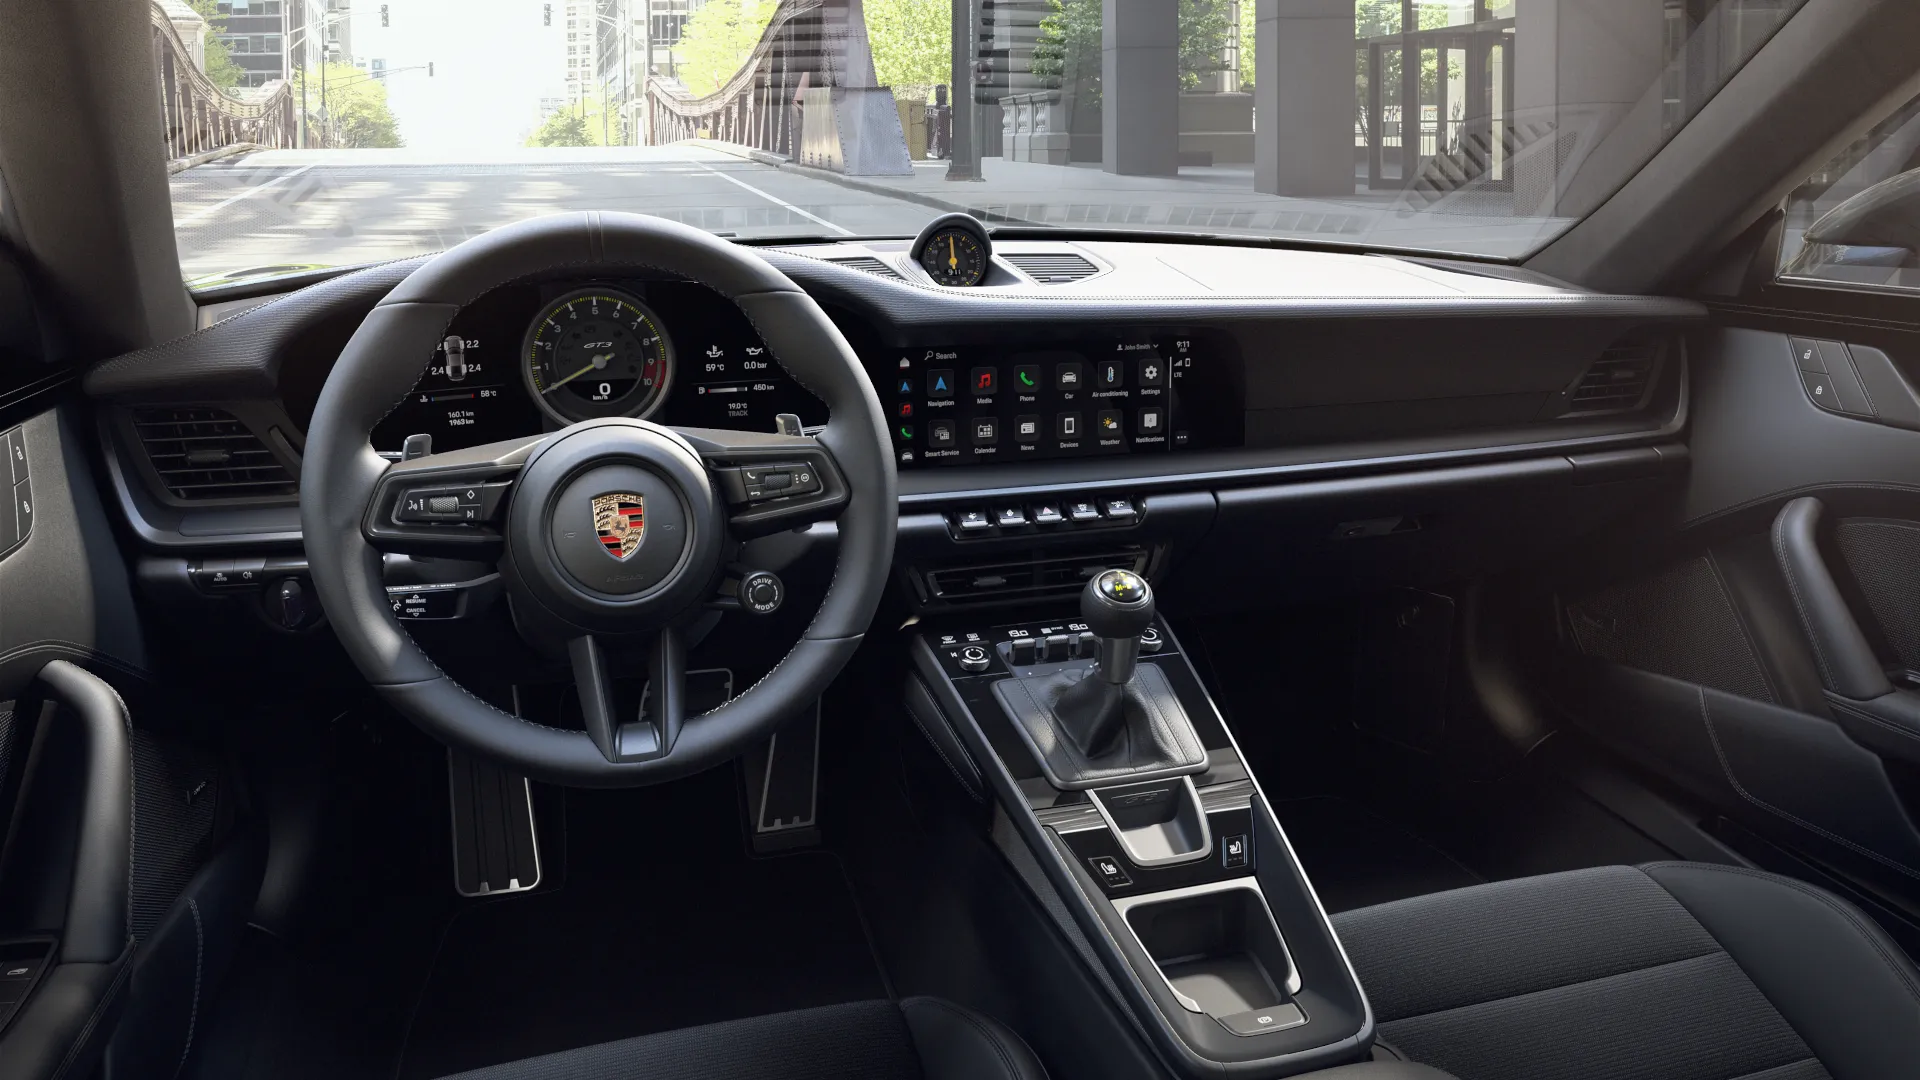 Innenansicht des 911 GT3 mit Touring-Paket